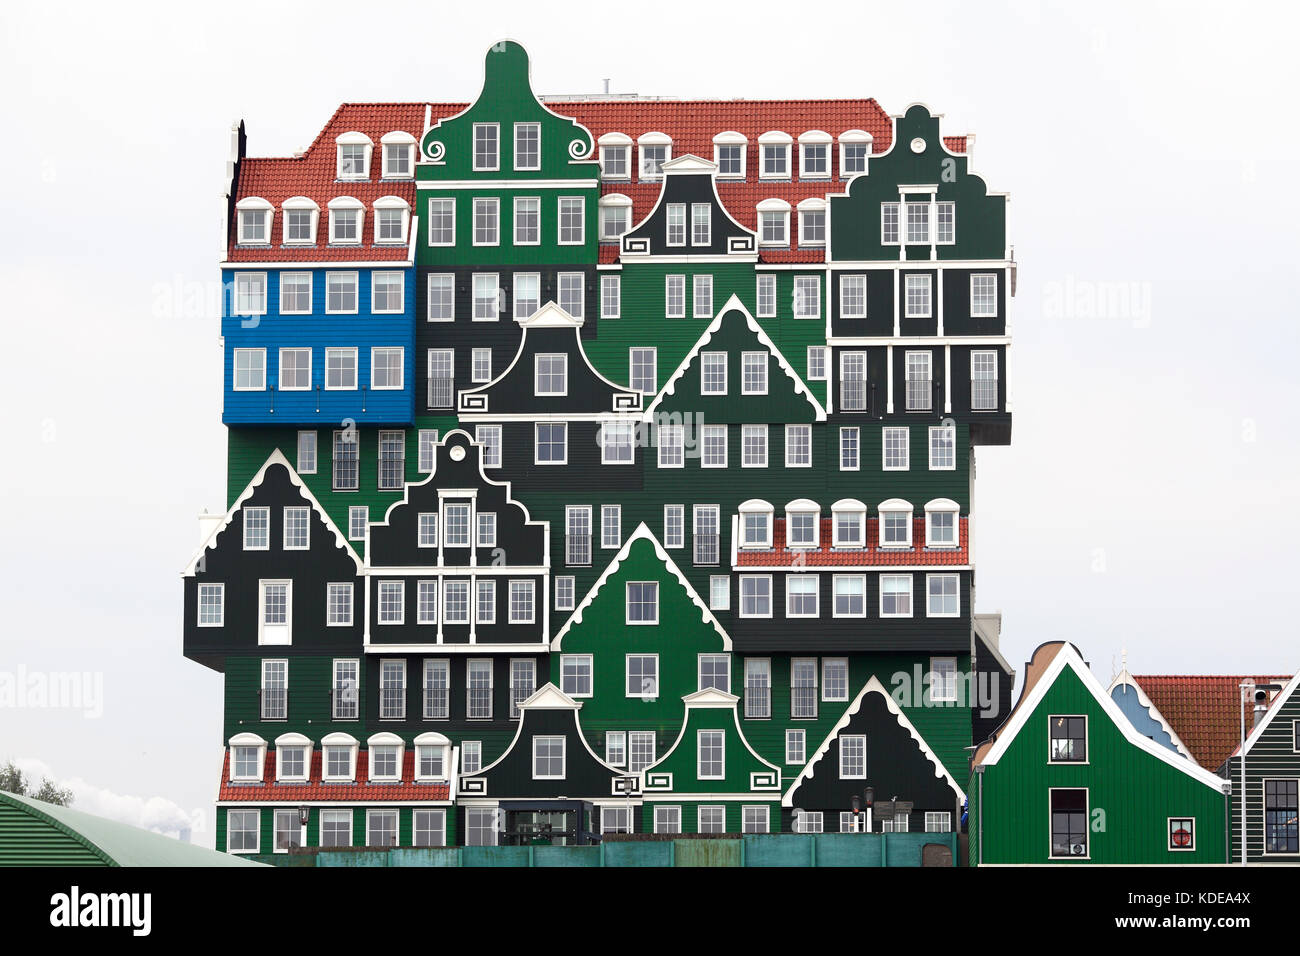 Das Inntel Hotel, Zaandam - ein schrulliger Bauen mit Holz Fassaden entwickelt, wie ein Stapel von Traditionellen holländischen Häuser sehen. Zany Zaandam! Stockfoto